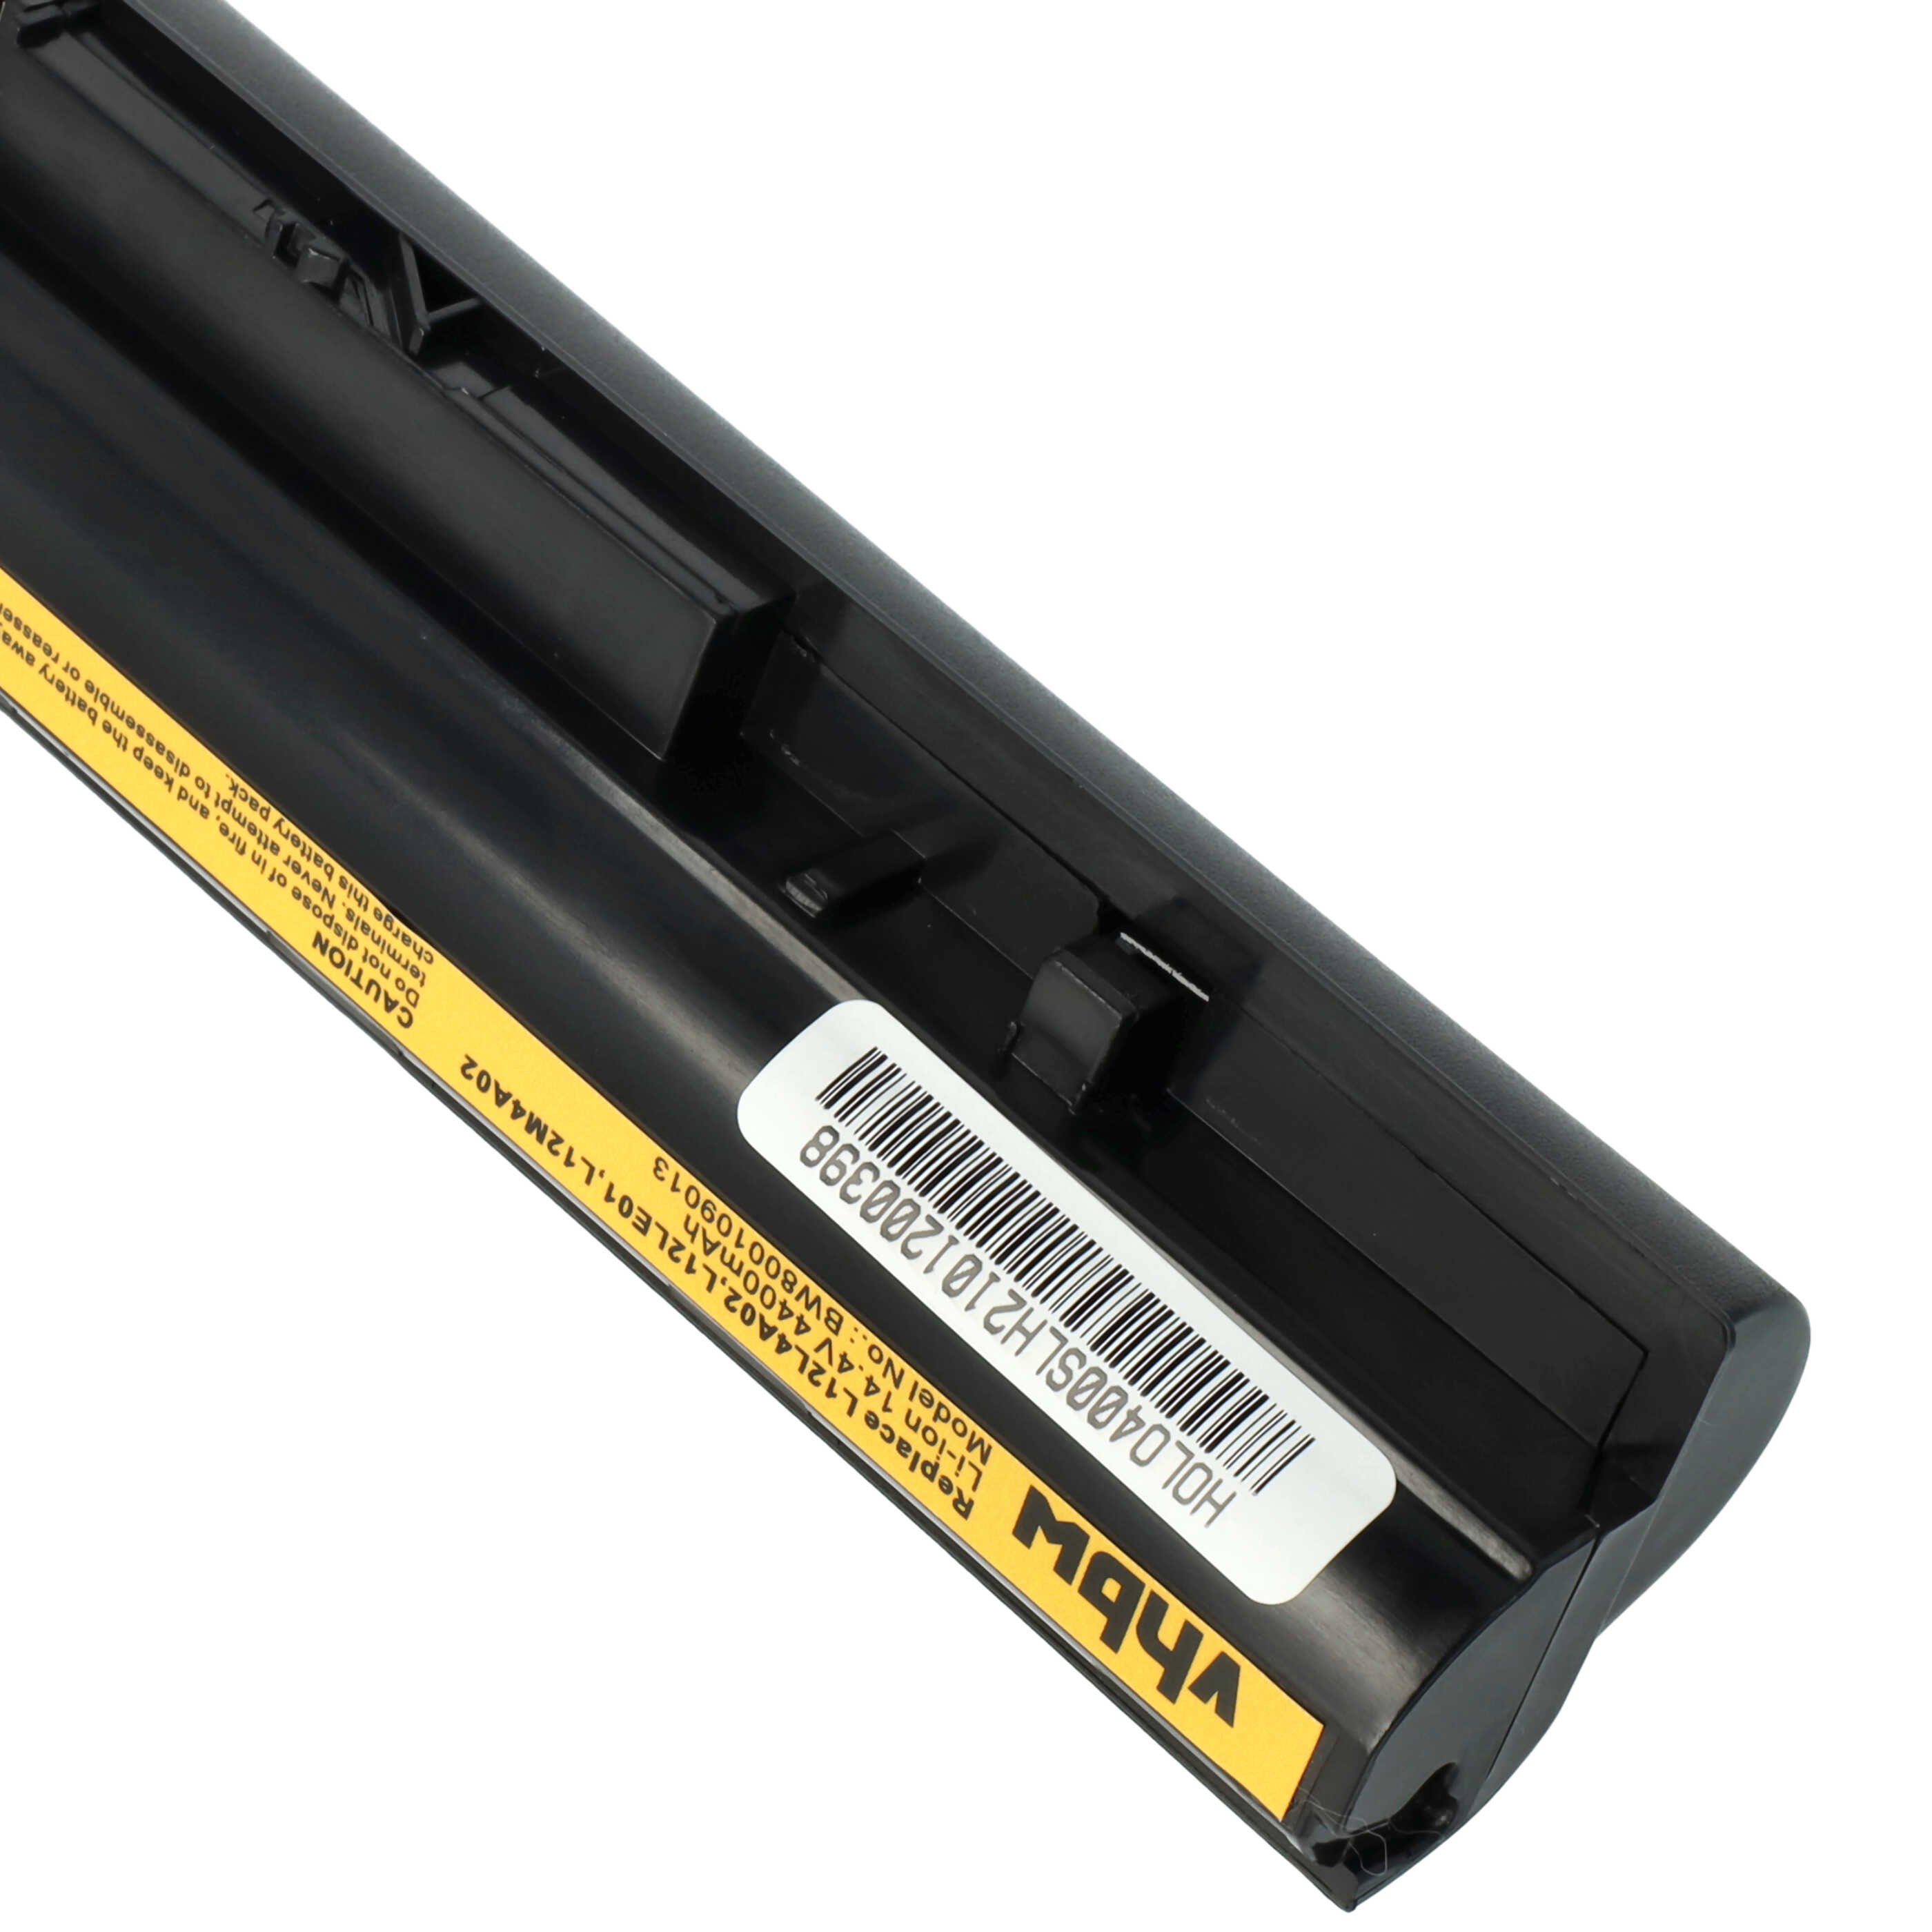 Batteria sostituisce Lenovo 121500171, 121500172, 121500173 per notebook Lenovo - 4400mAh 14,8V Li-Ion nero